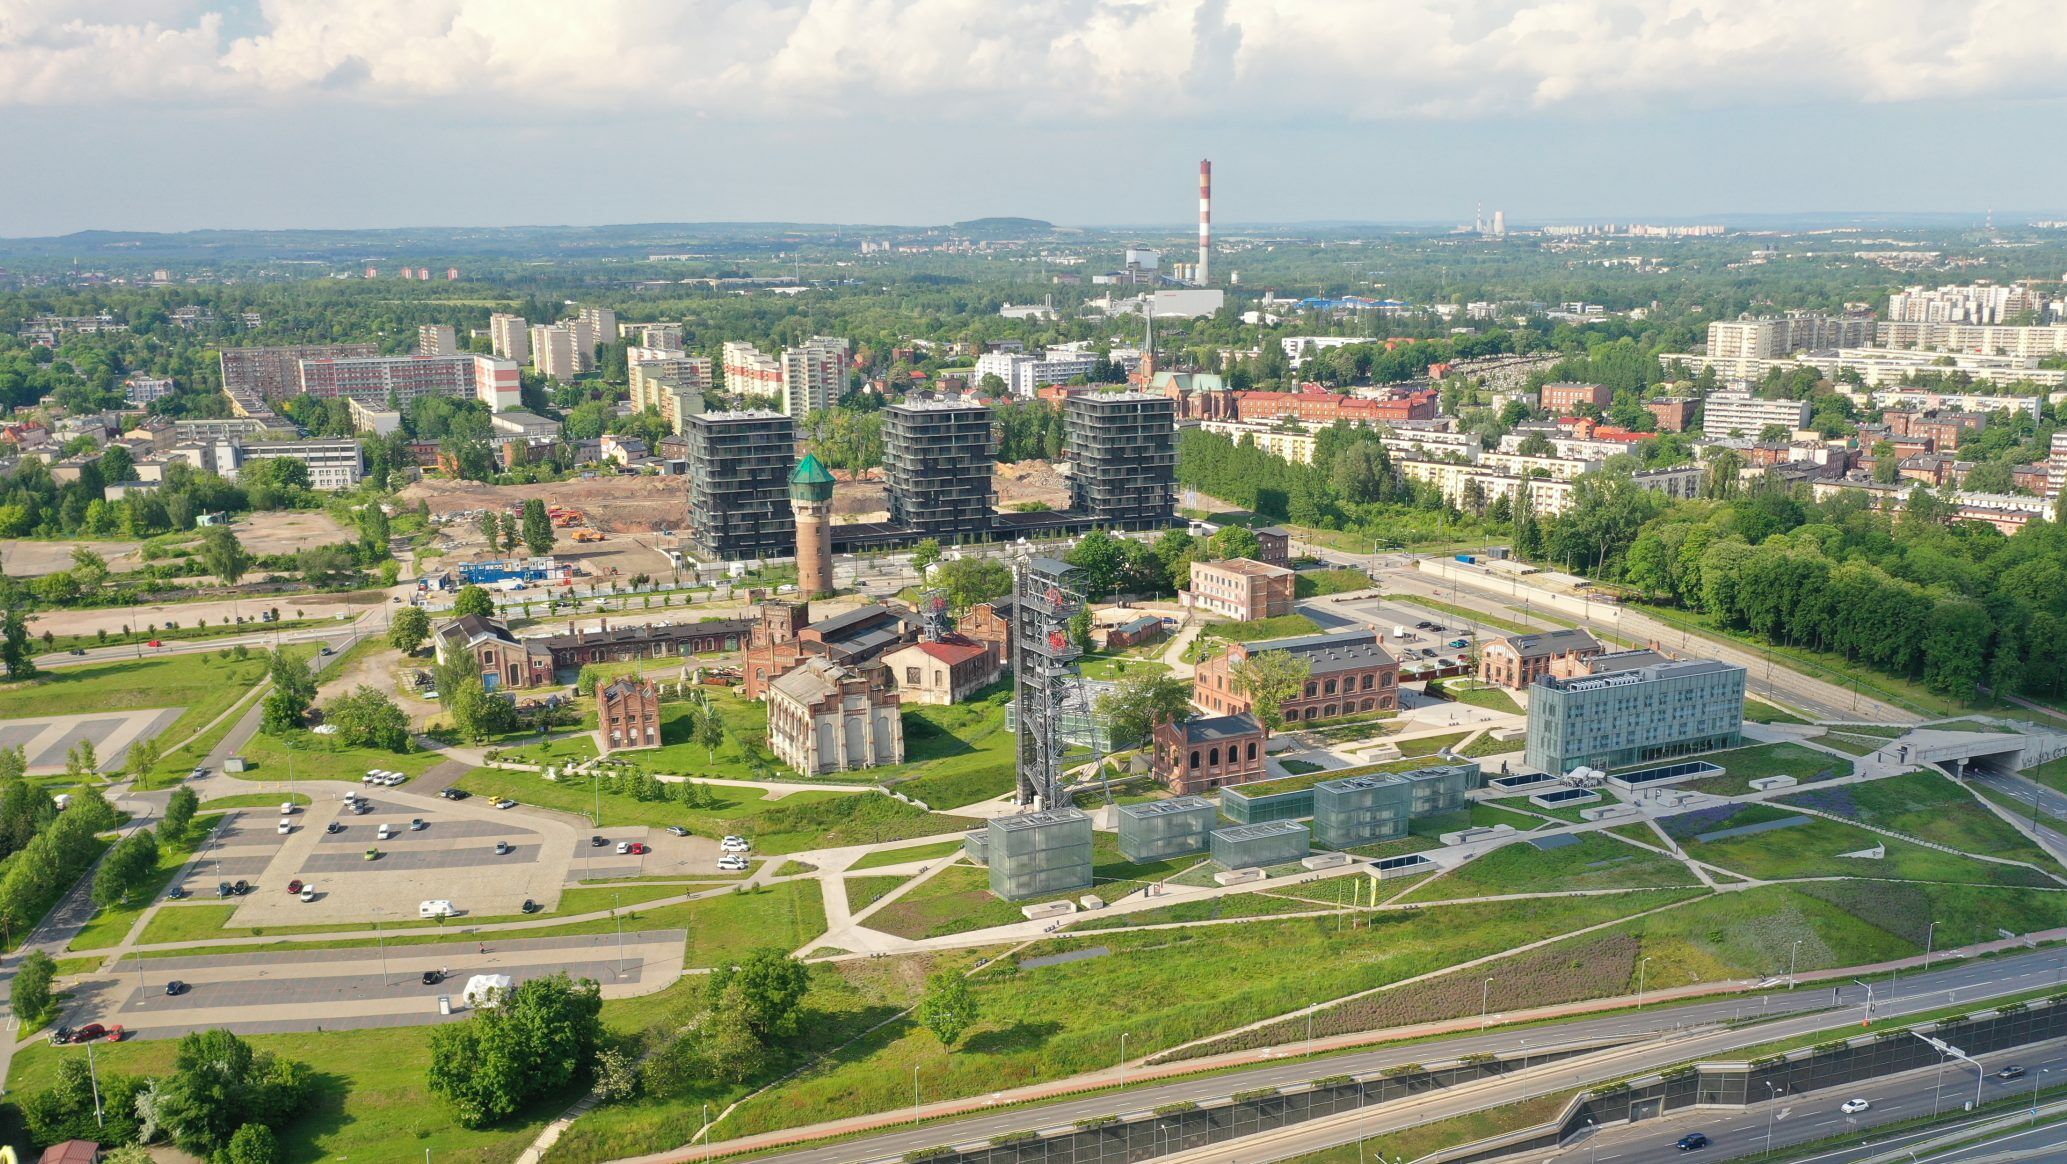 Katowice Coal Mine